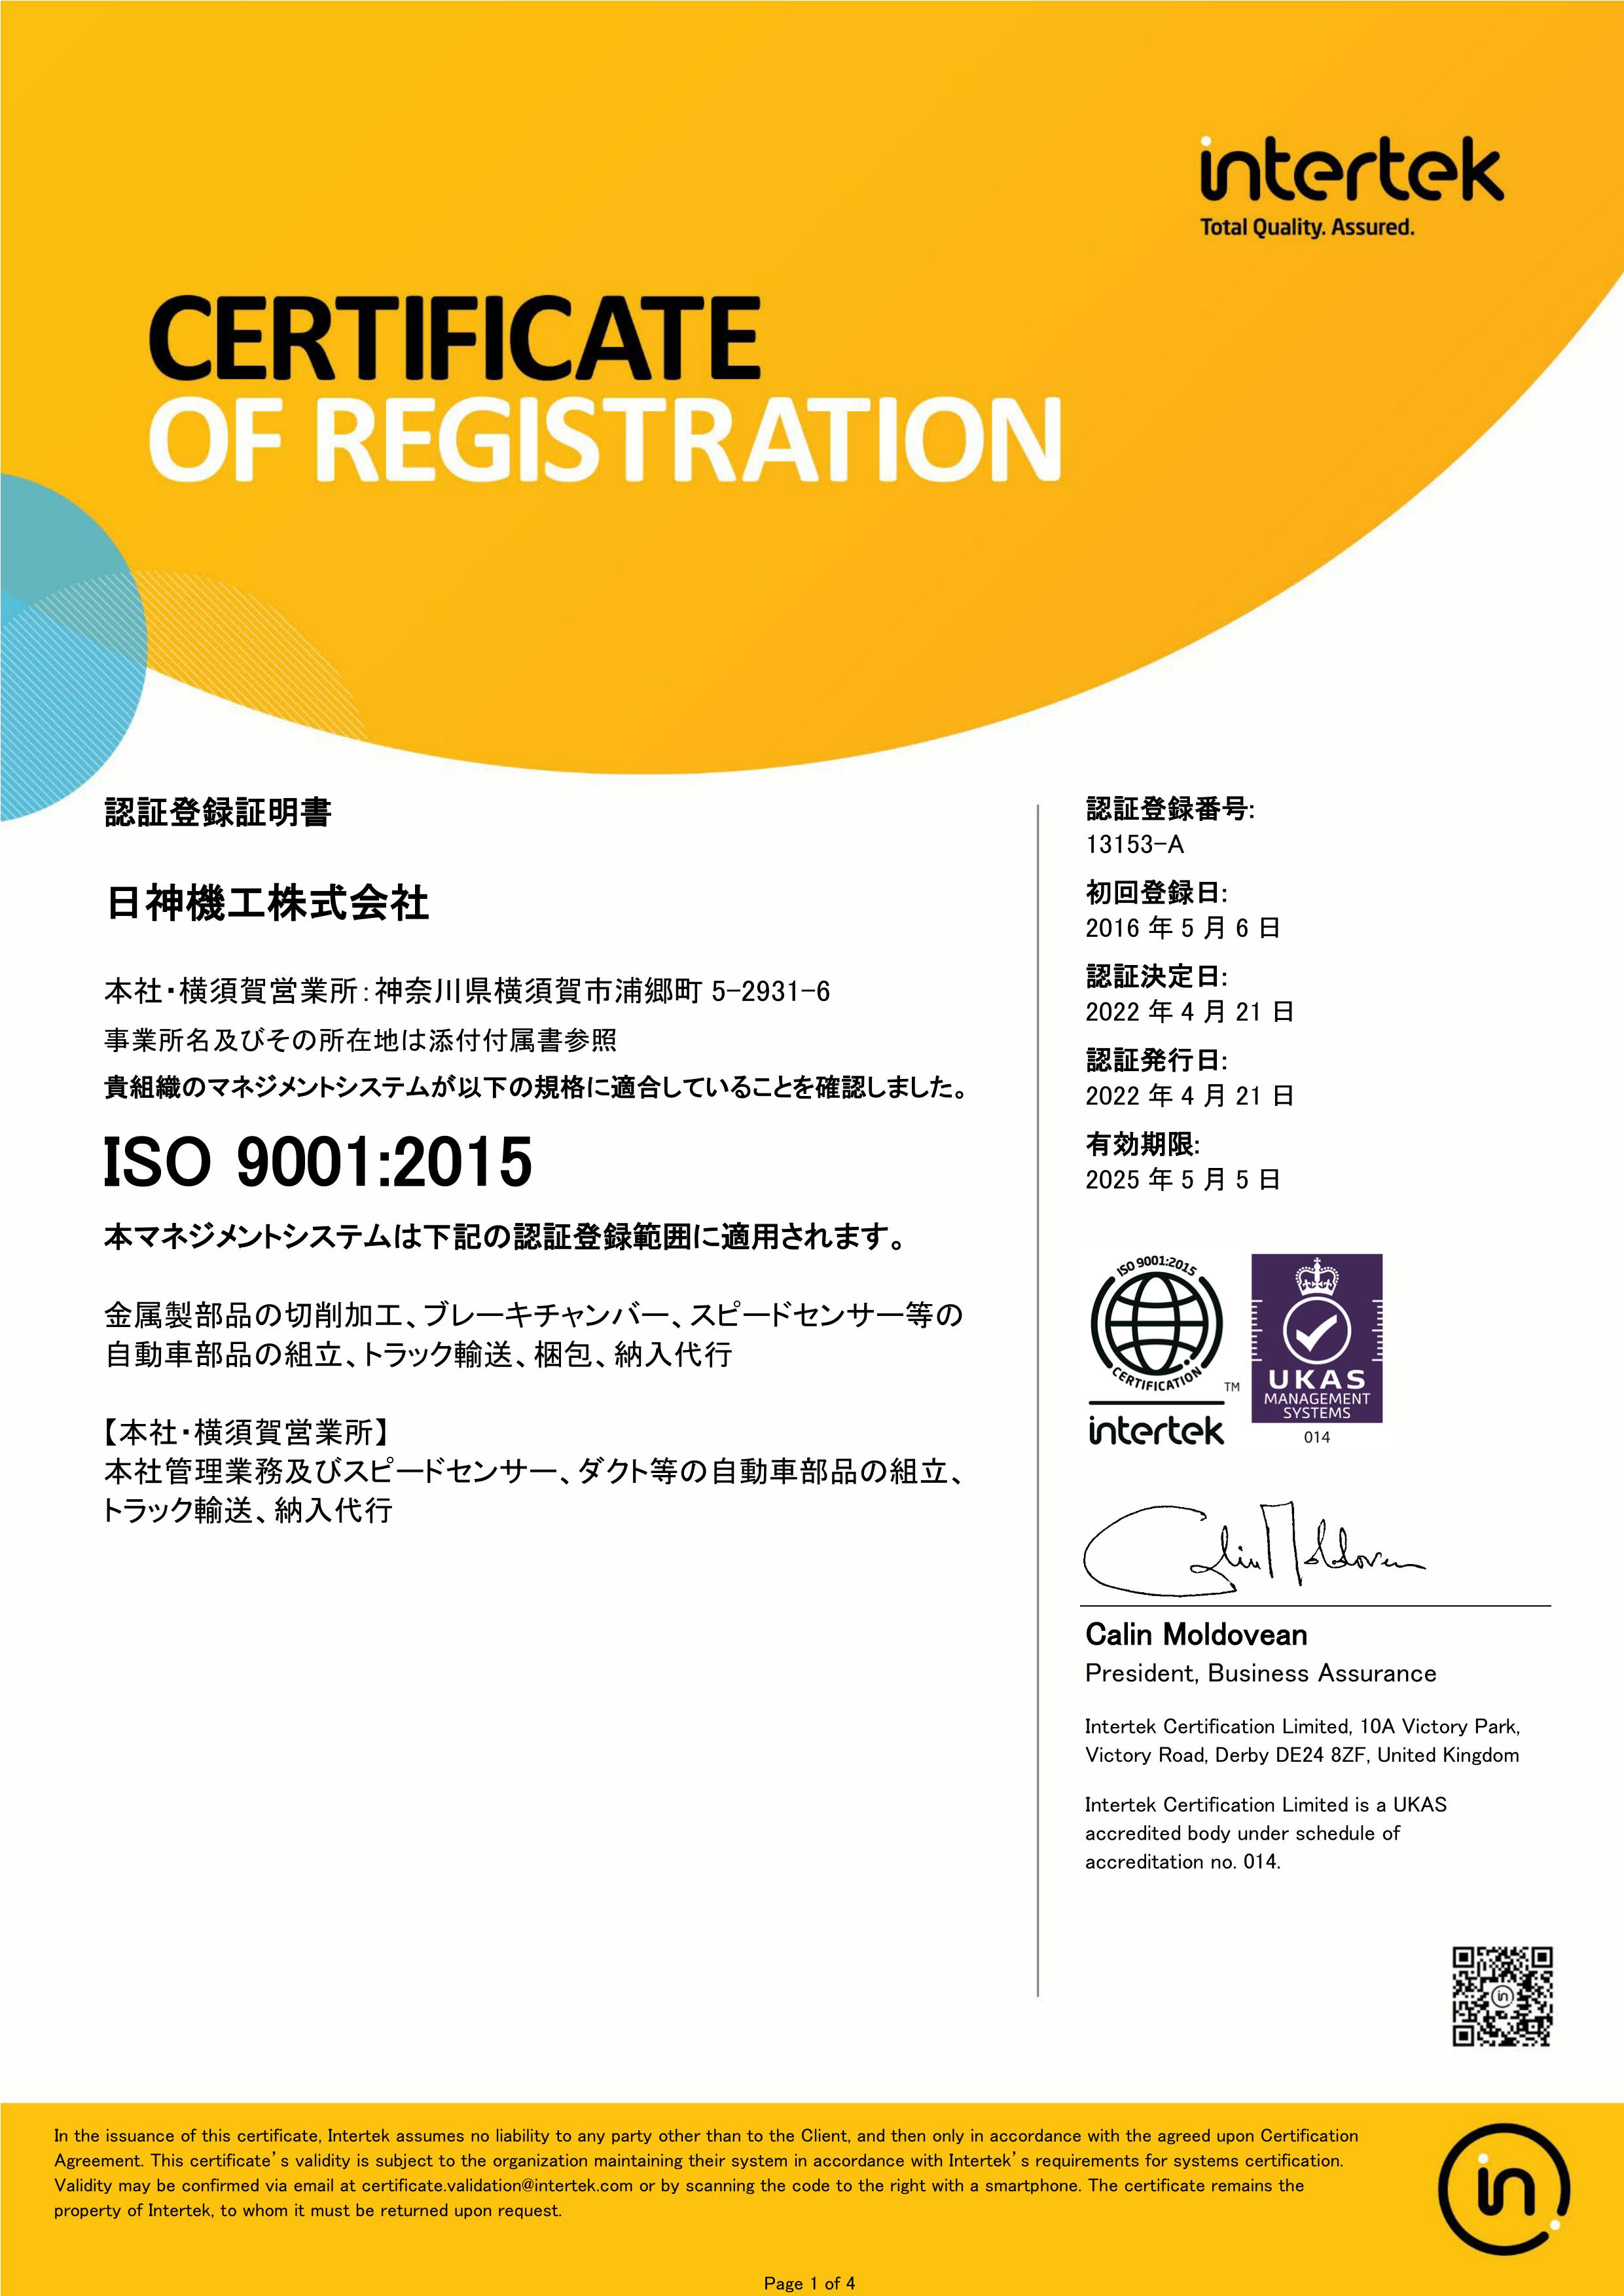 ISO9001登録証4分の1ページ目を表示しております